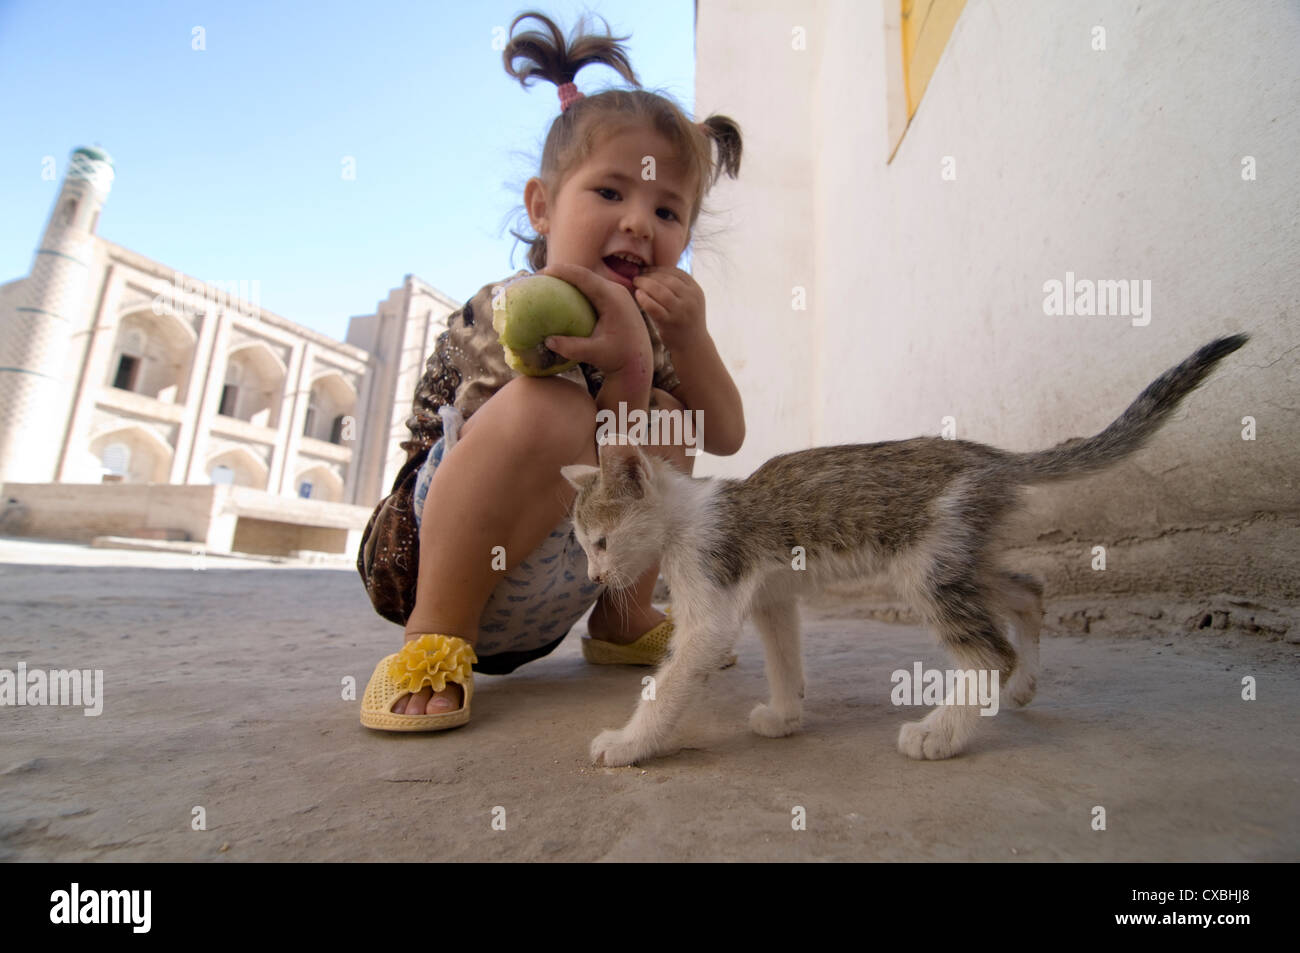 Une jeune fille jouant avec un chaton dans la vieille ville de Khiva, Ouzbékistan. Banque D'Images